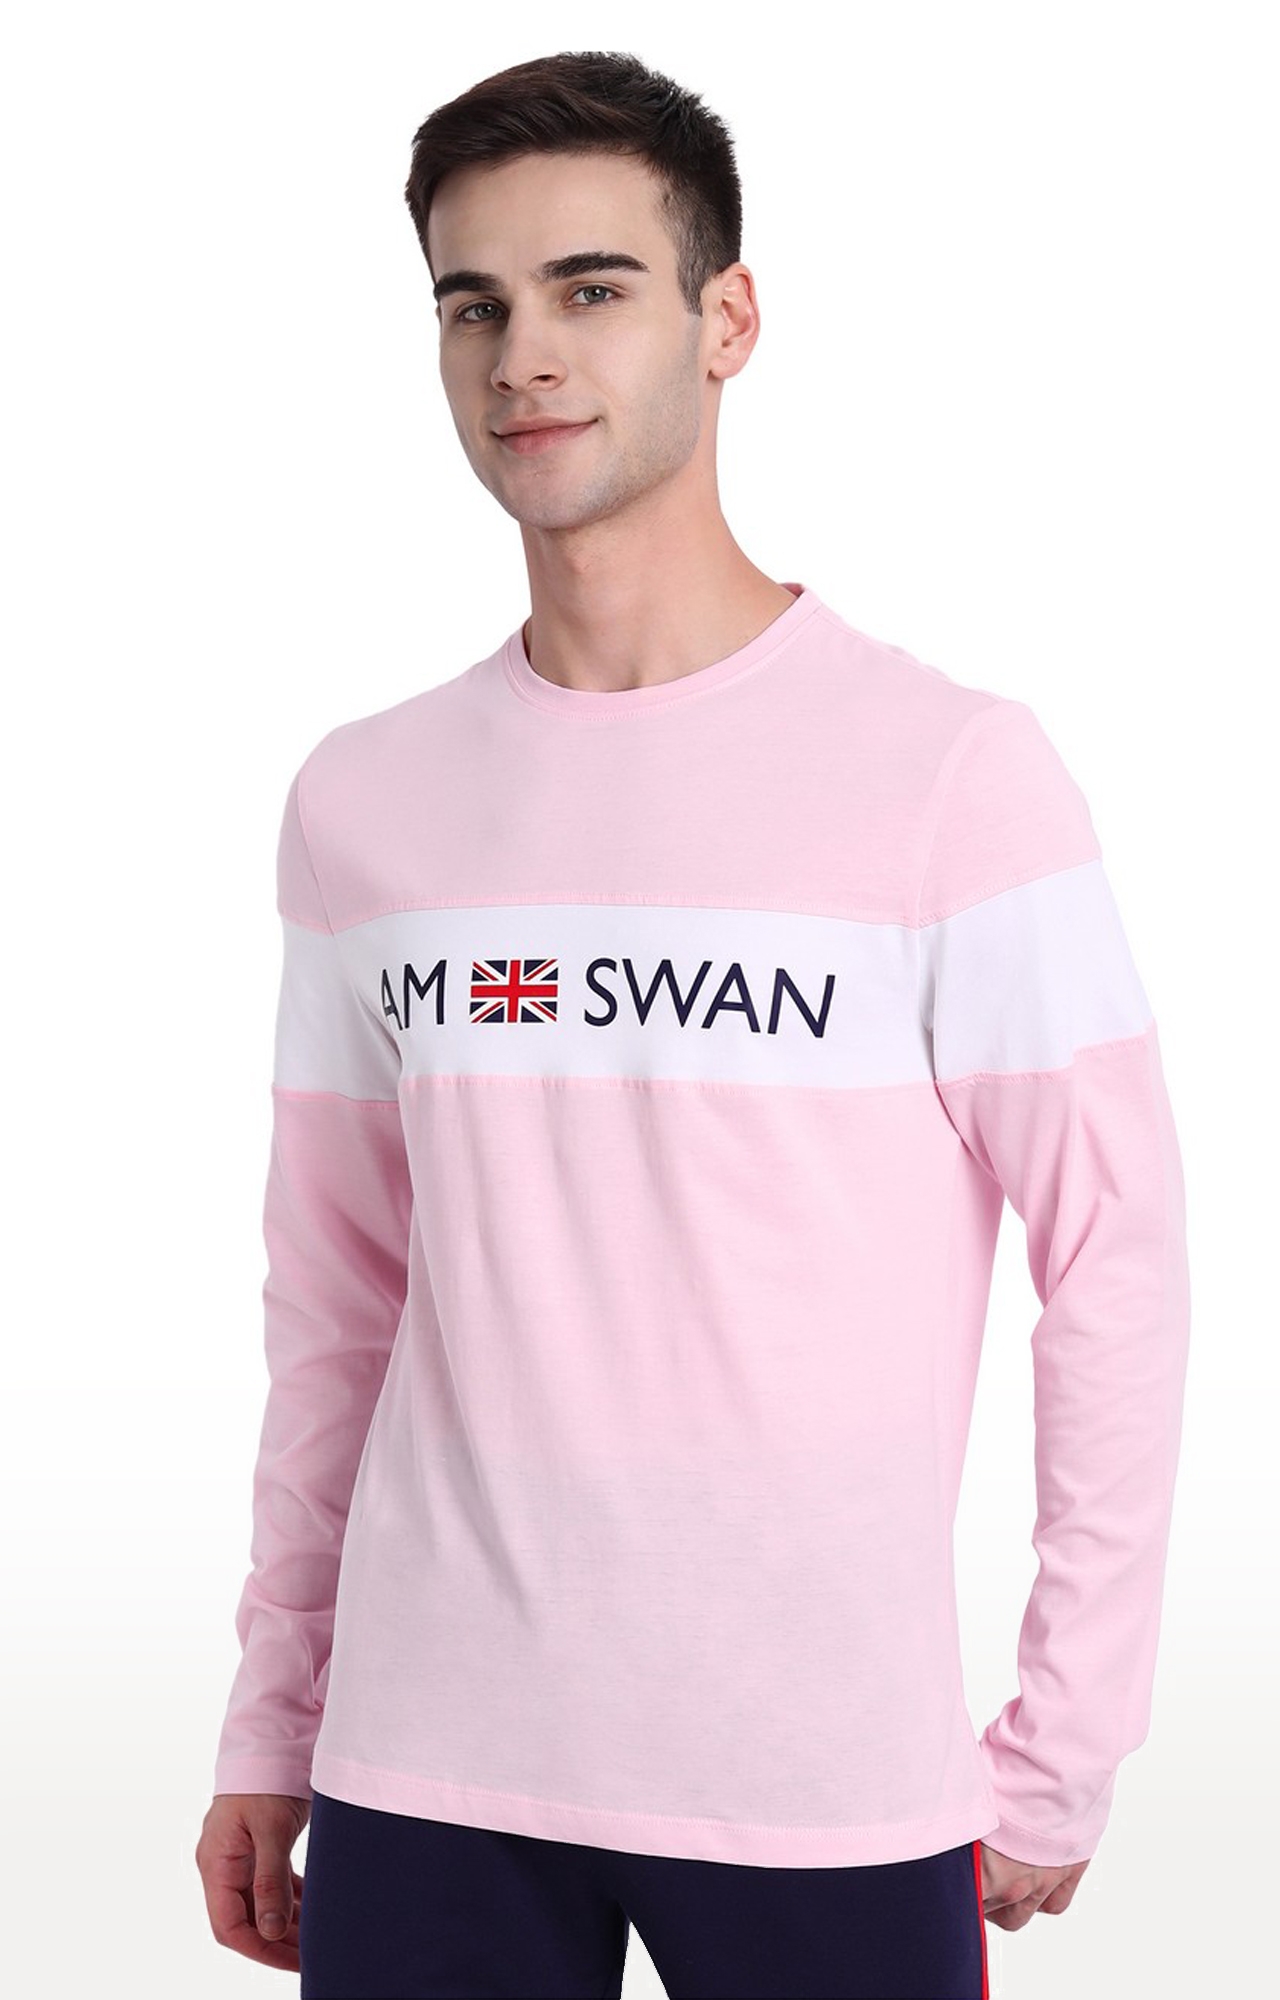 Am Swan | Men's Pink Cotton Typographic Printed Regular T-Shirt